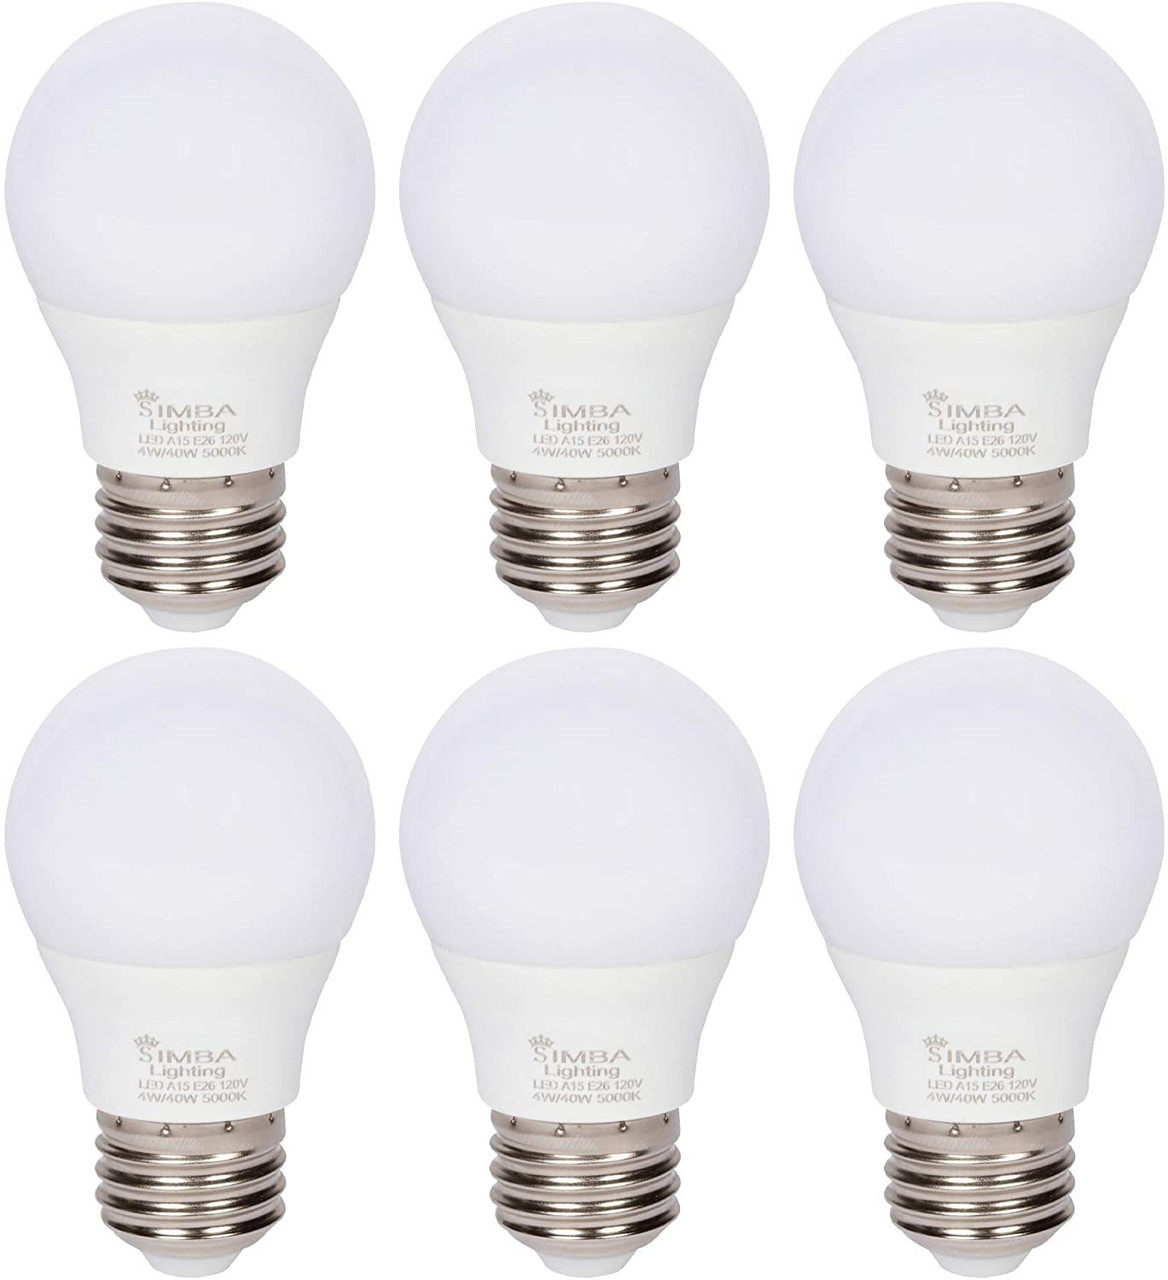 4 Pack LED Refrigerator Light Bulbs Equivalent, 40W 120V Fridge